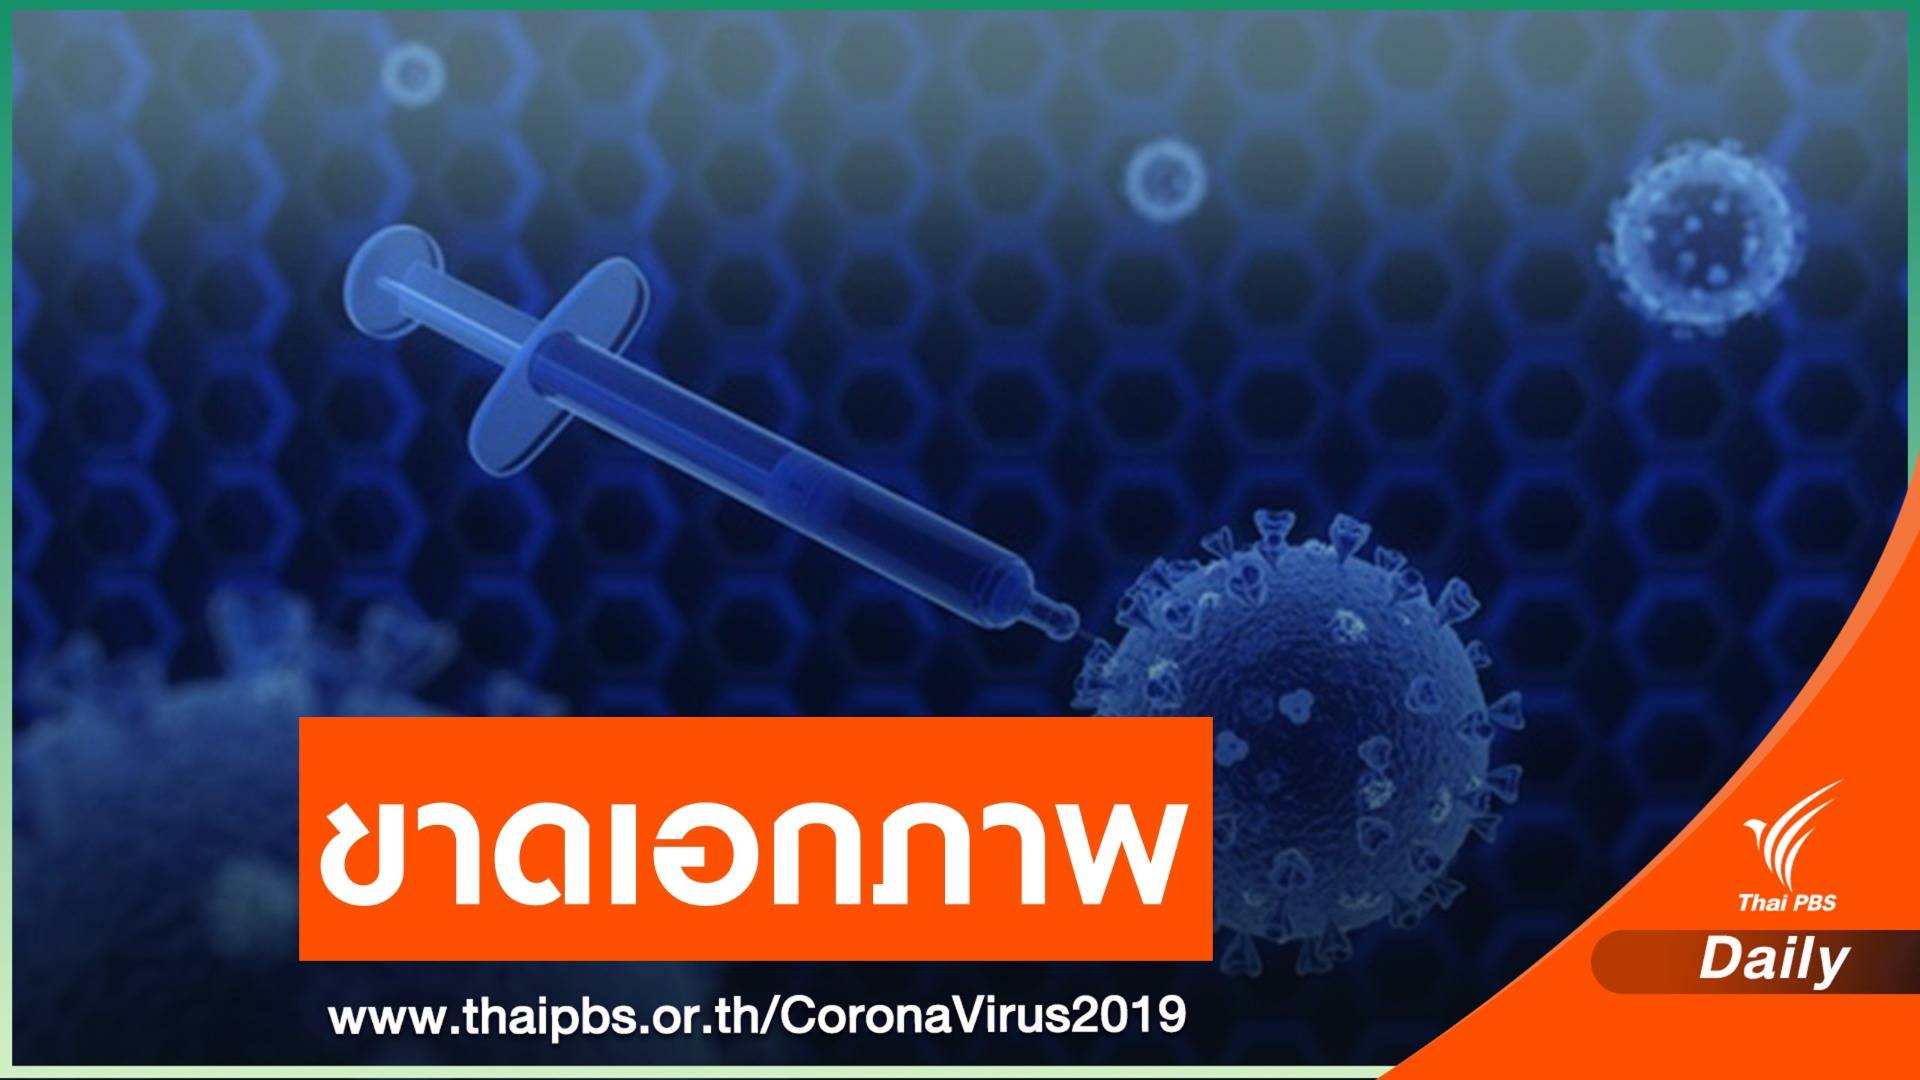 "นพ.ยง" ชี้ปัญหาพัฒนาวัคซีน COVID-19 คือขาดความร่วมมือ